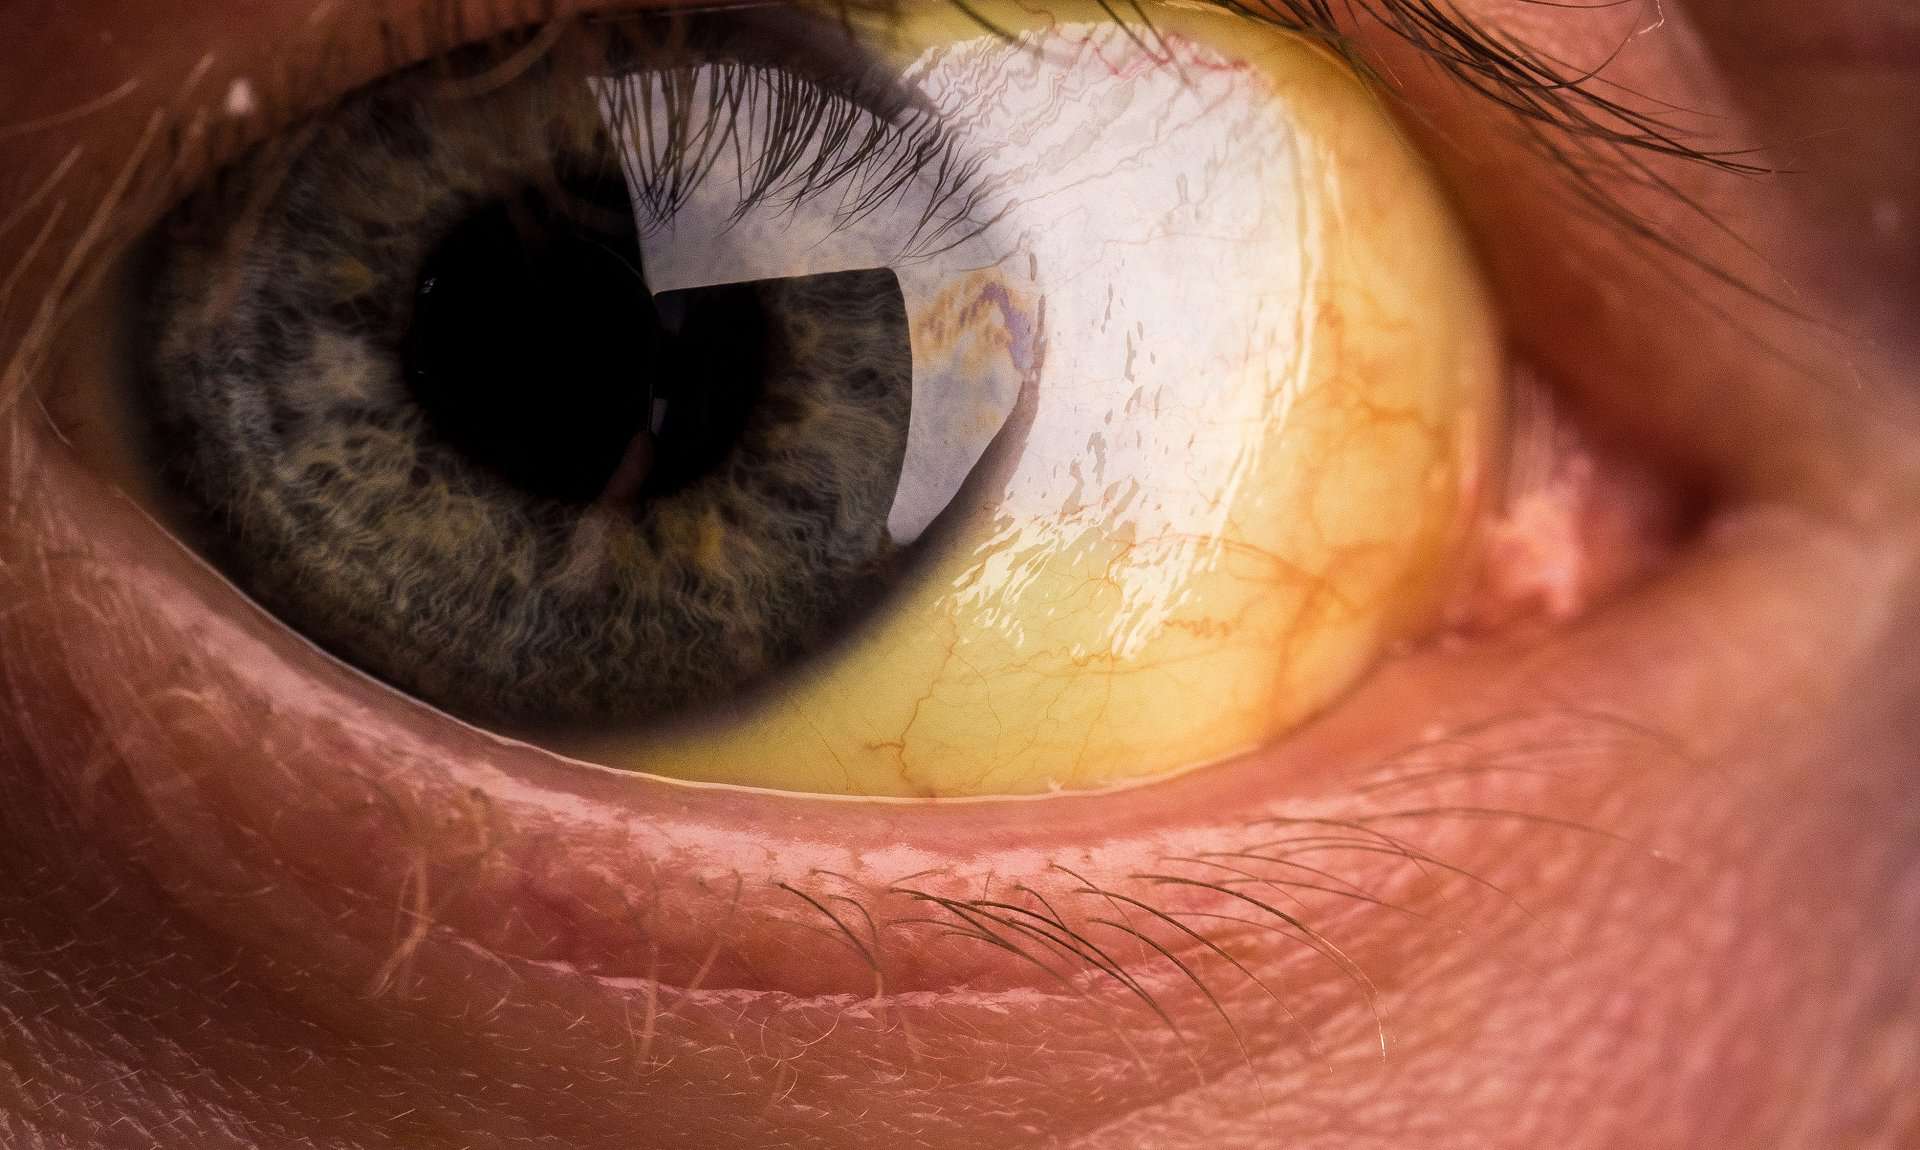 yellow eyeballs causes